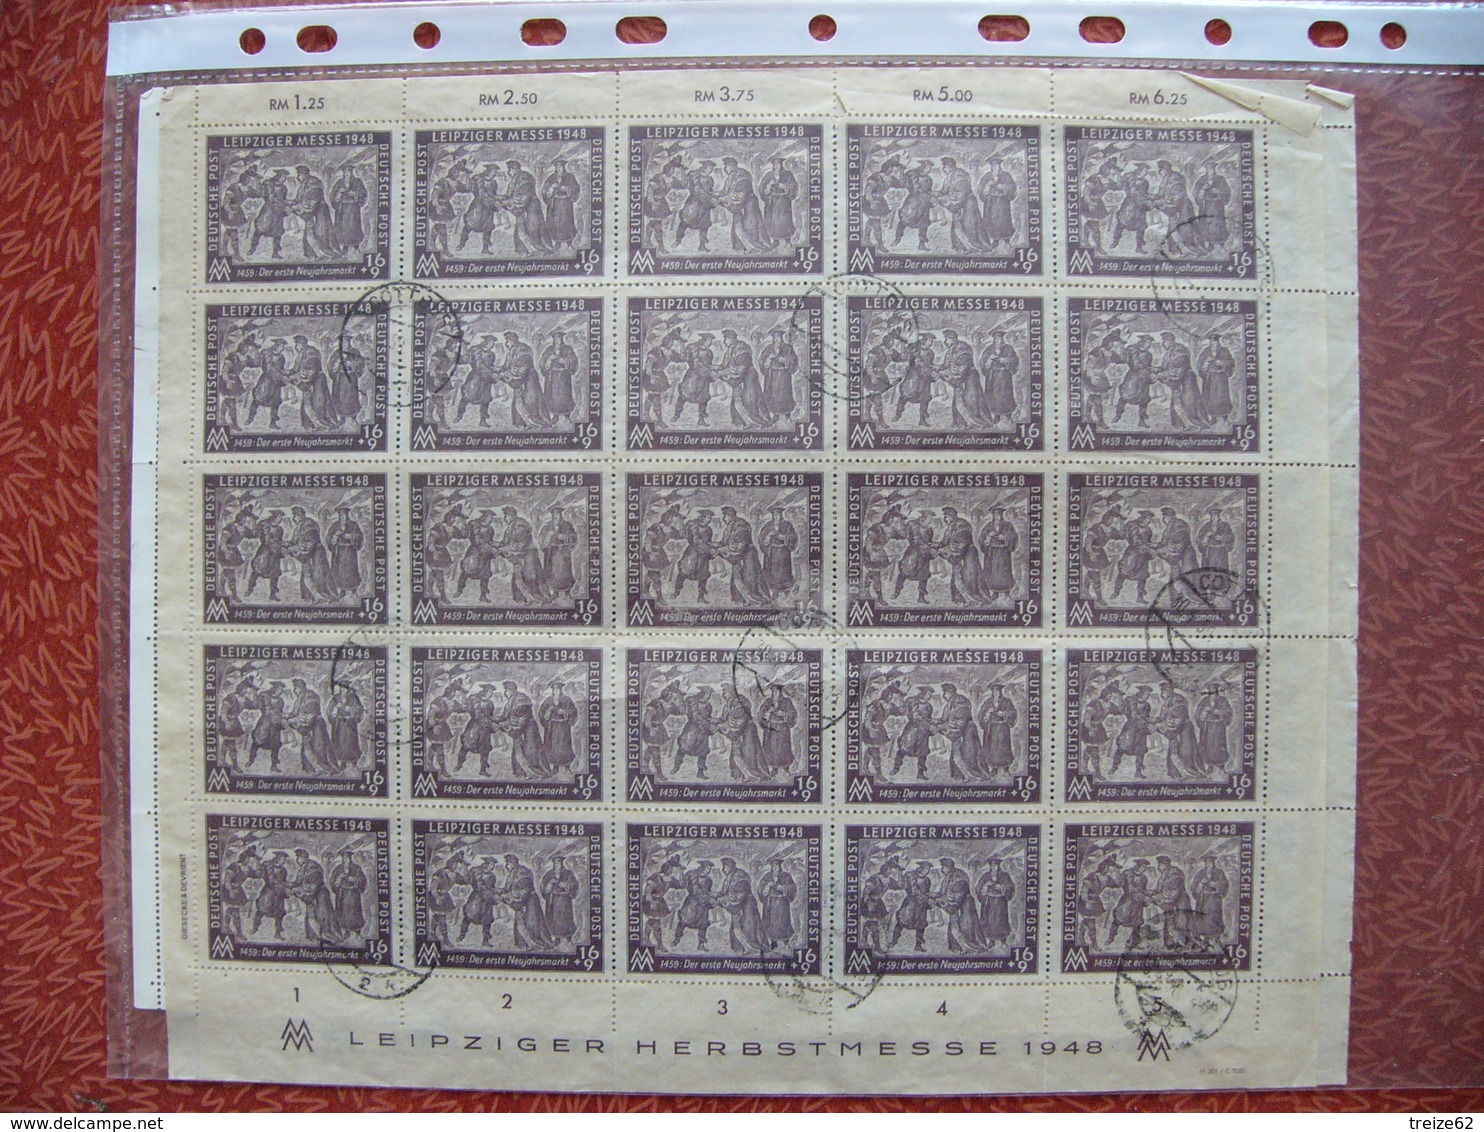 Vrac Vieux timbres qq centaines fin 19ème début 20 ème monde anciennes colonies françaises et anglaises Dahomey Danzig +